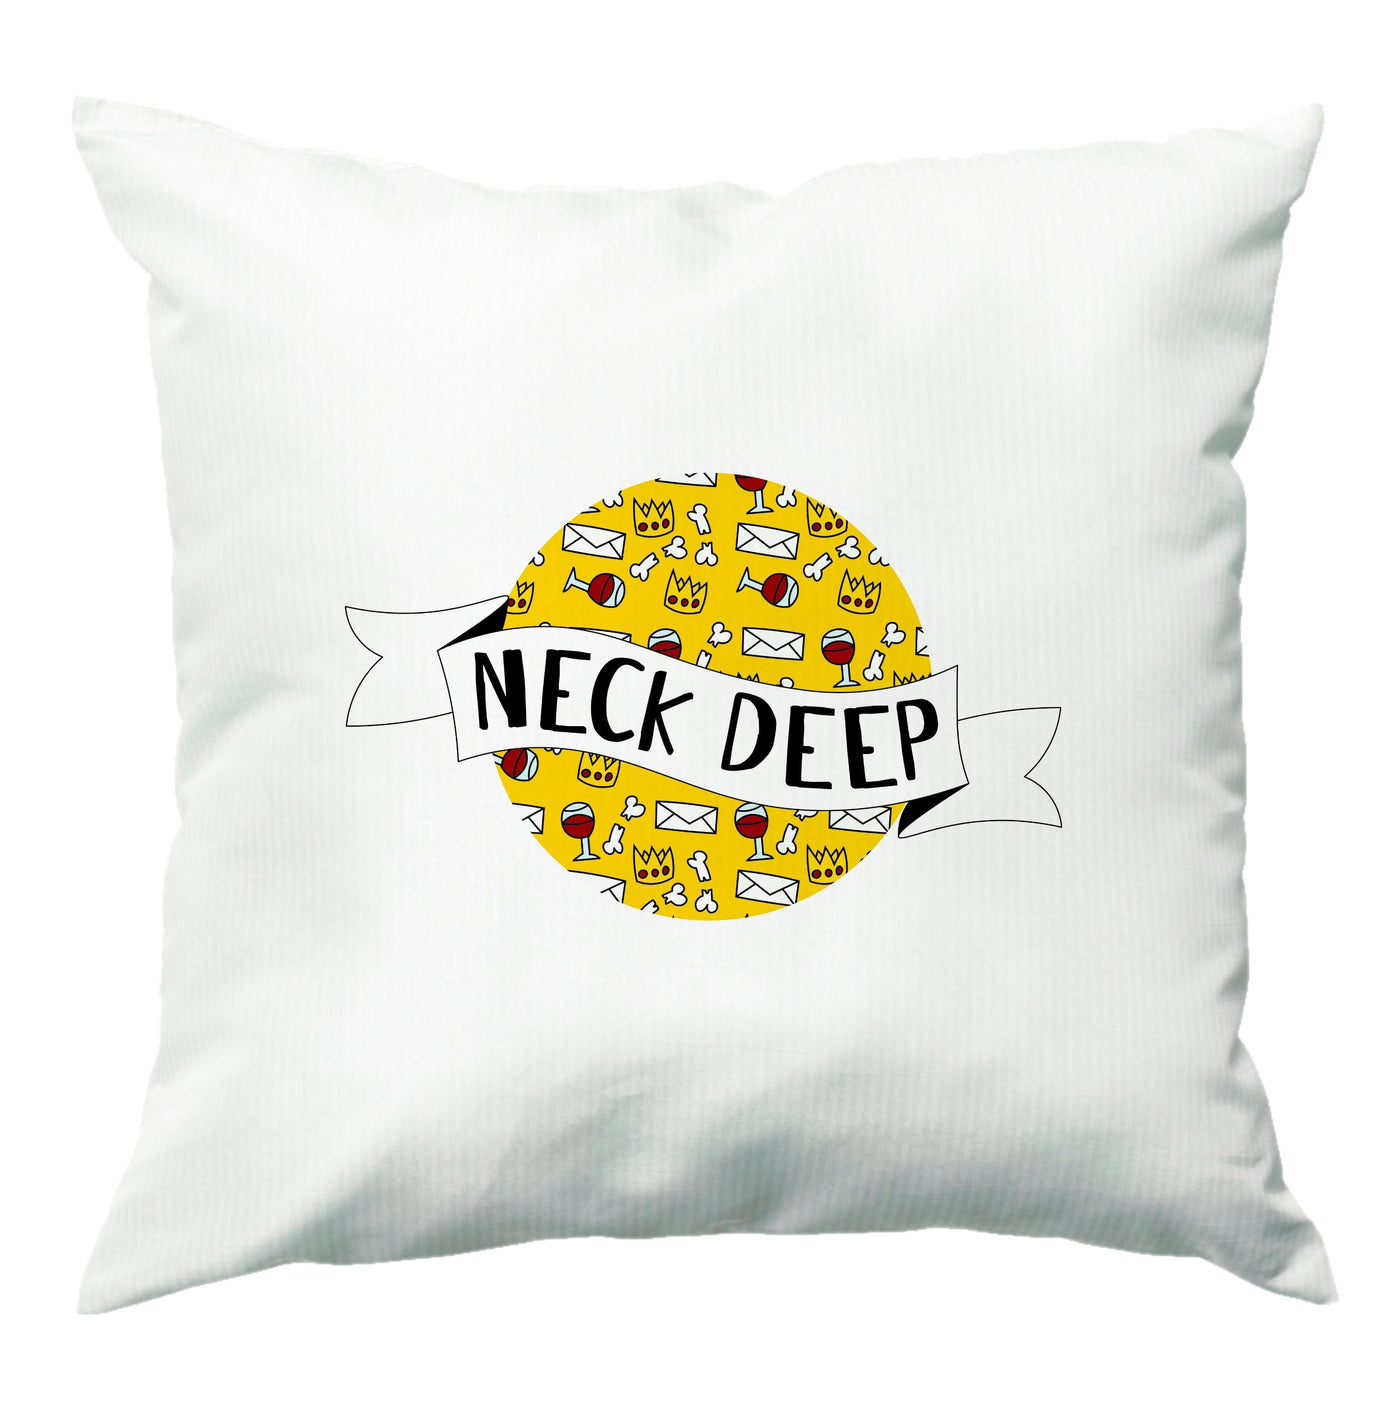 Neck Deep - Festival Cushion